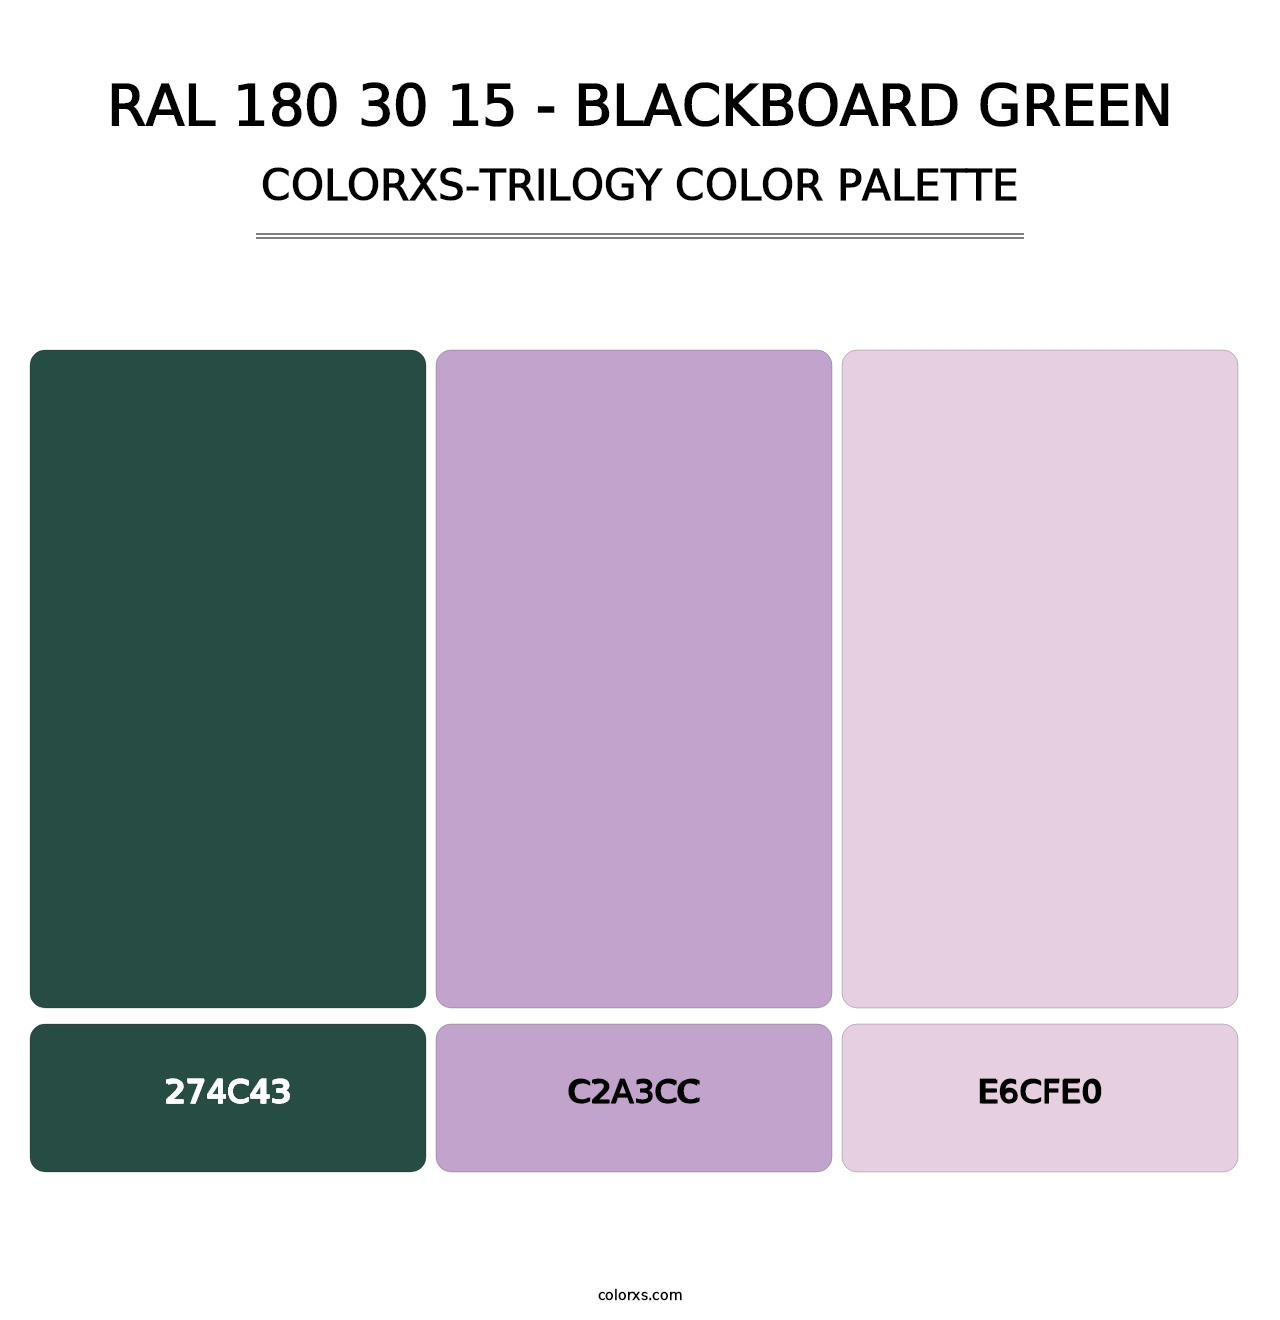 RAL 180 30 15 - Blackboard Green - Colorxs Trilogy Palette